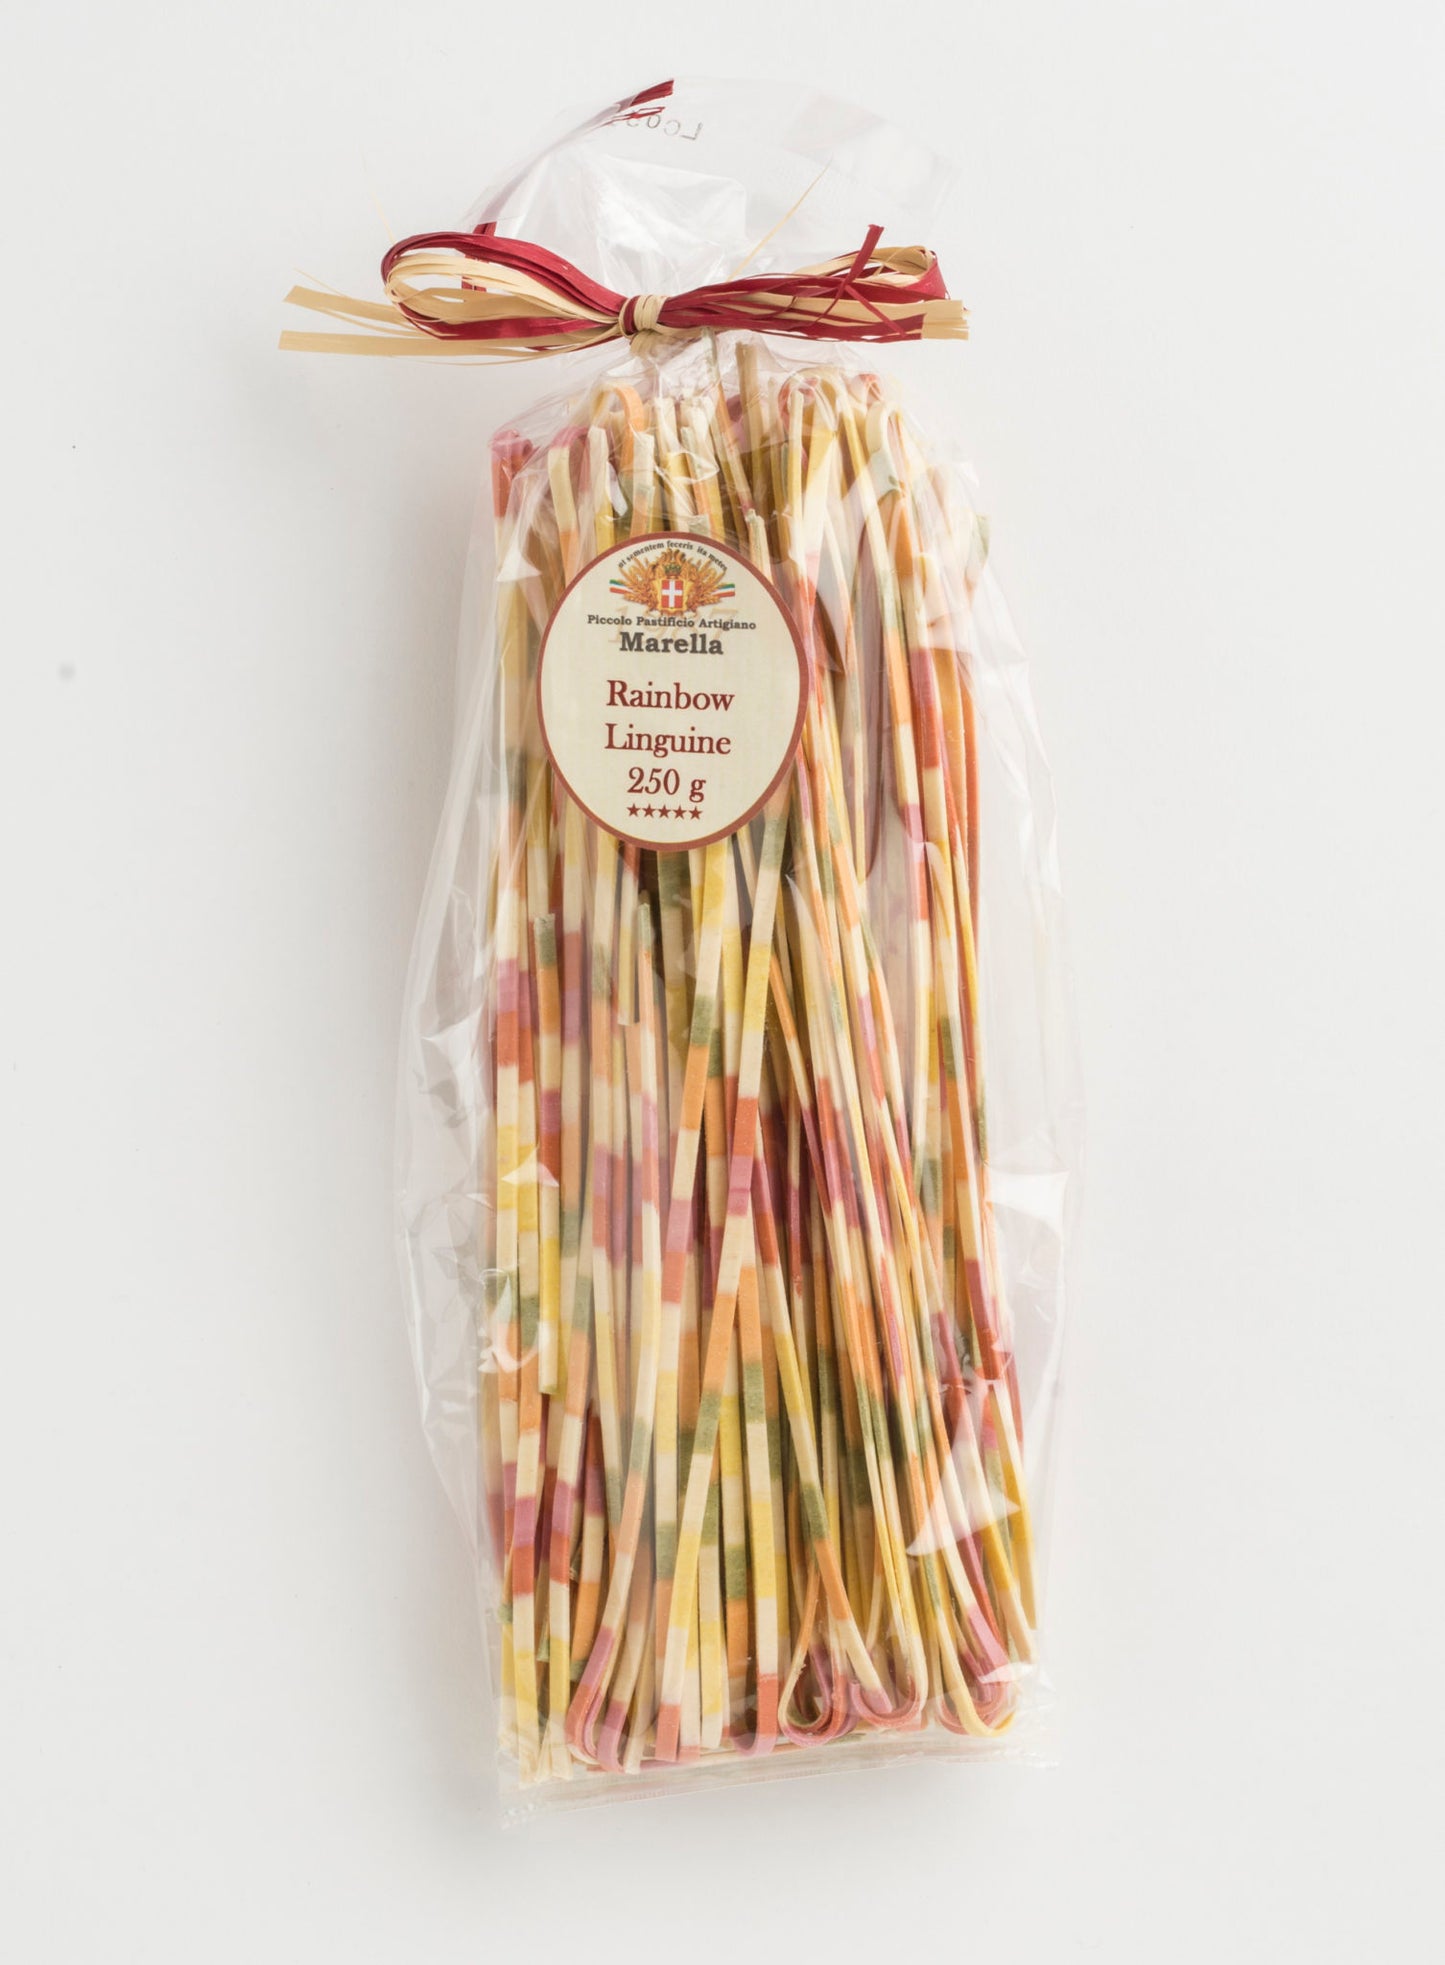 Rainbow Linguine Organic Pasta